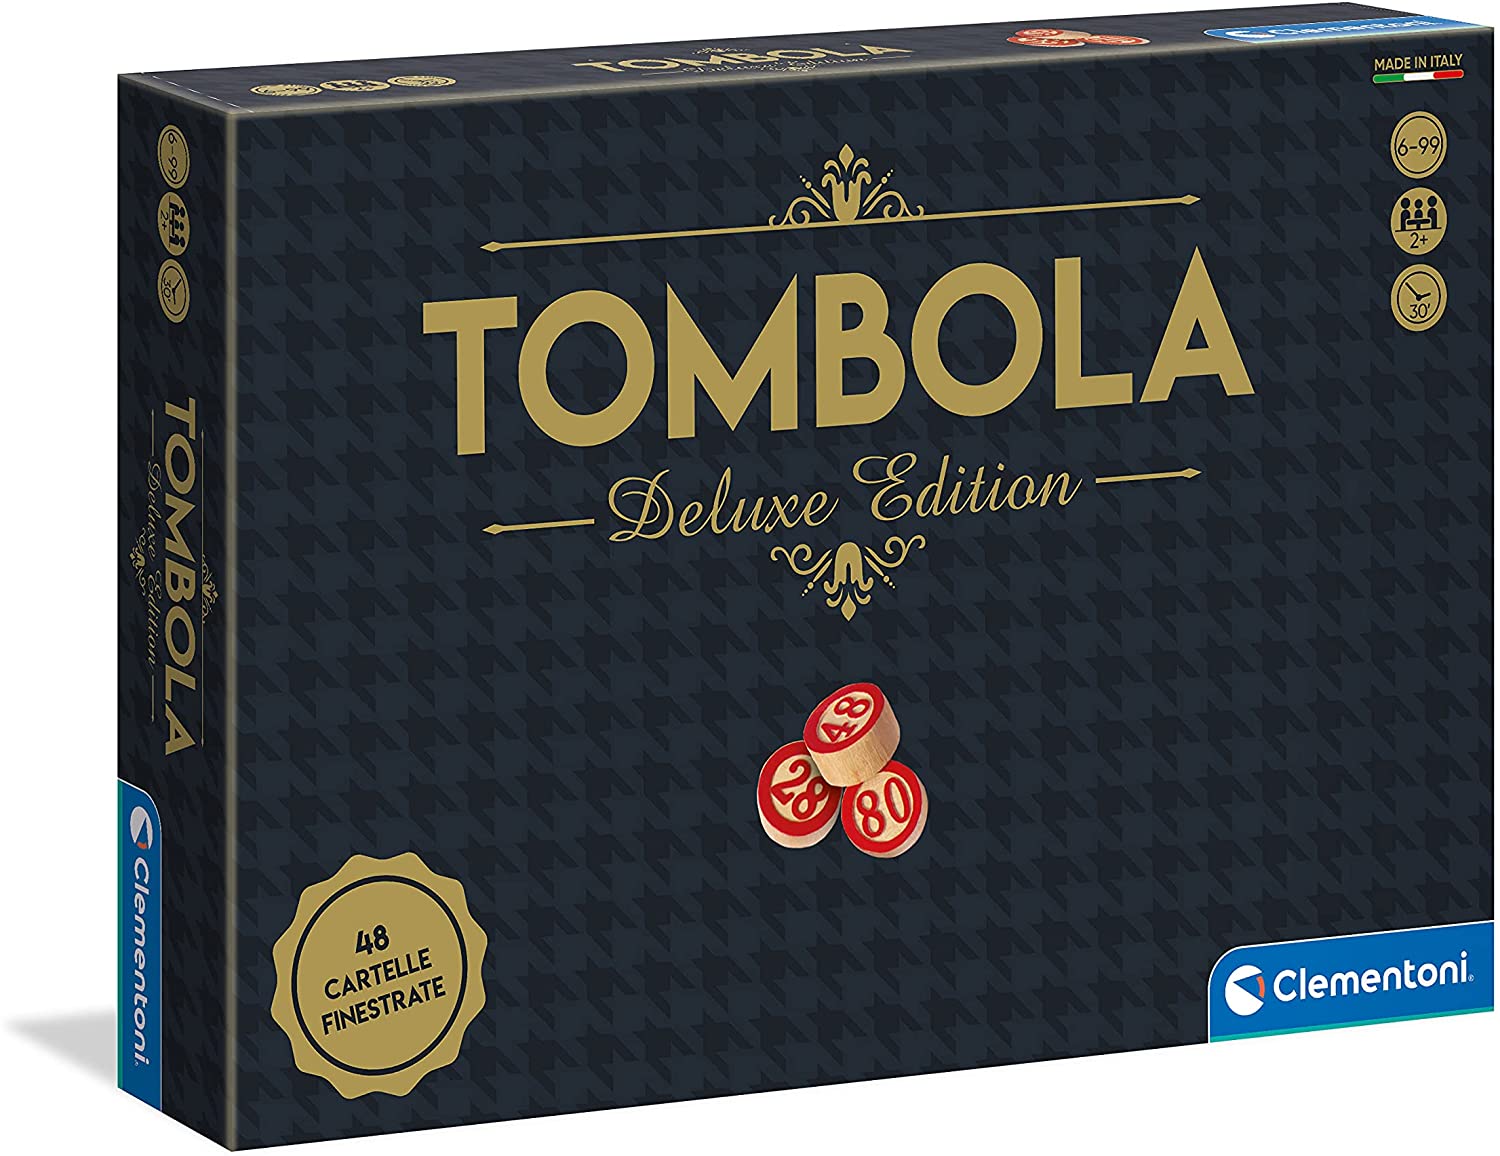 Clementoni - 16630 - Tombola edizione Deluxe, 48 cartelle - gioco da tavolo, gioco in scatola per tutta la famiglia